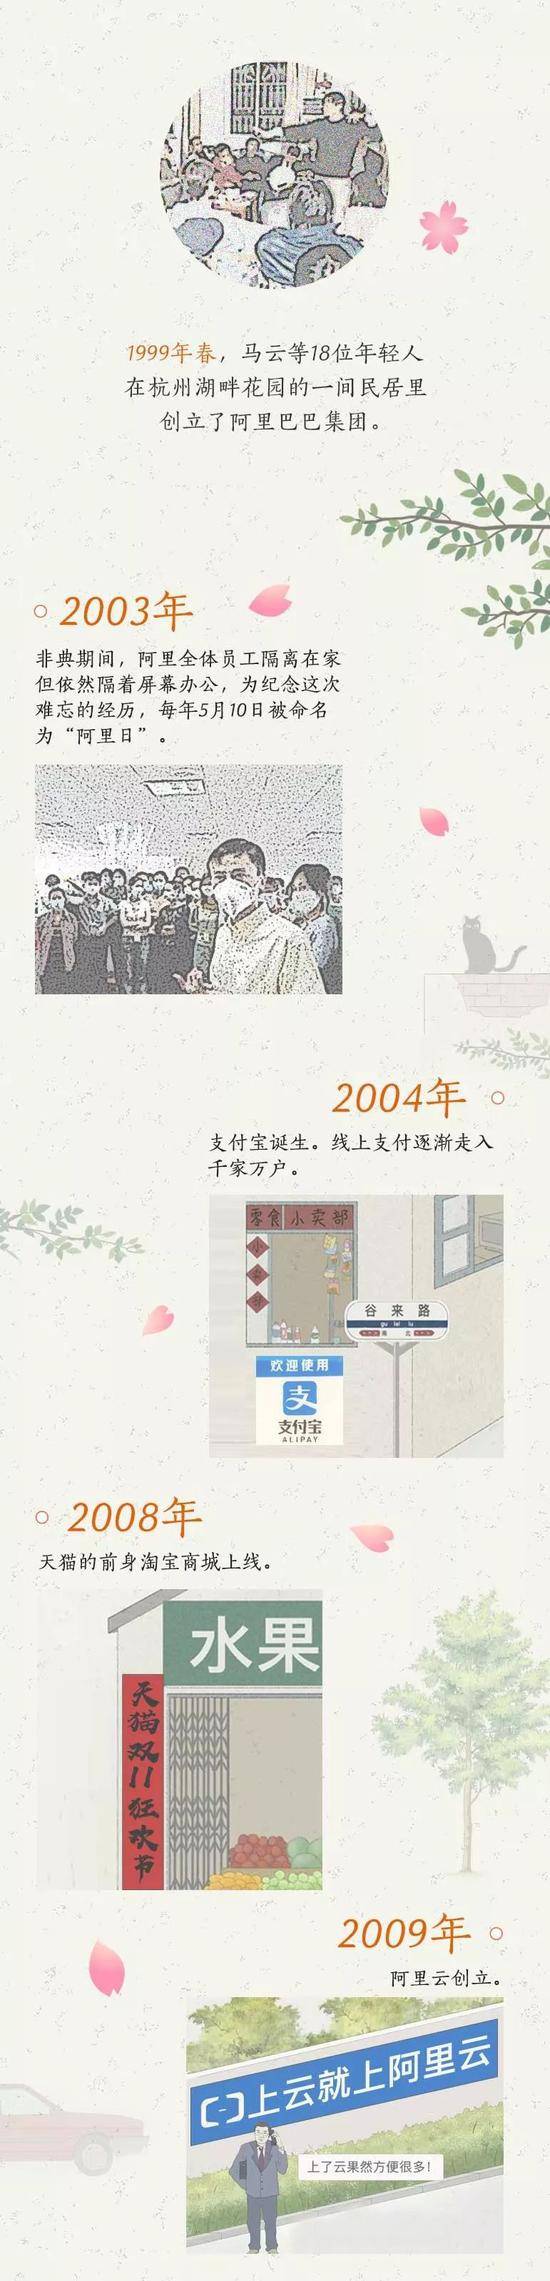 今天 我回到了20年前的杭州：致敬正在路上的追梦人